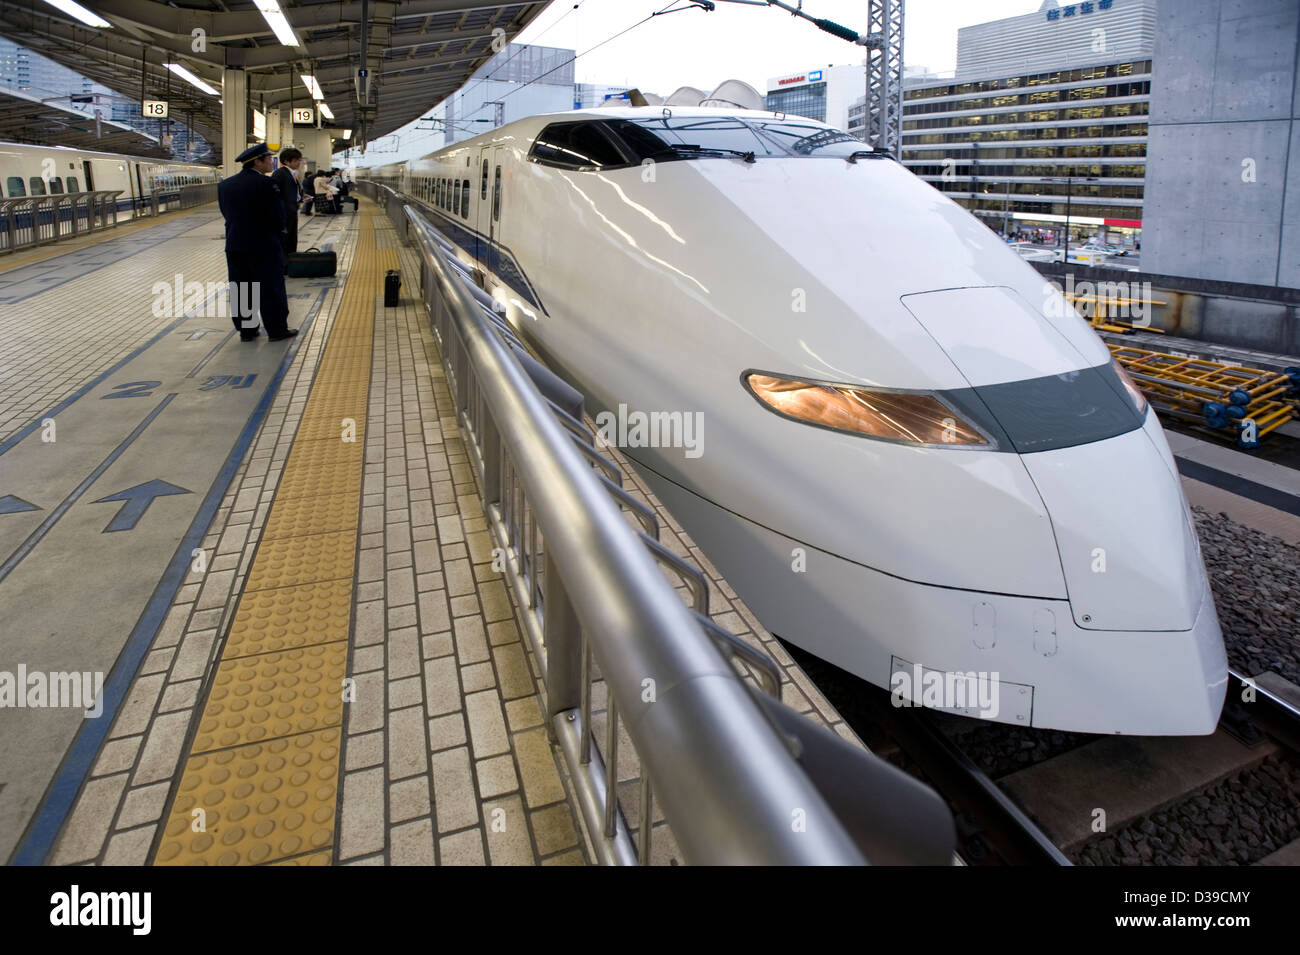 Elegante e bianco ferrovie Giappone shinkansen super-express treno bullet vi aspetta presso la piattaforma nella stazione di Tokyo. Foto Stock